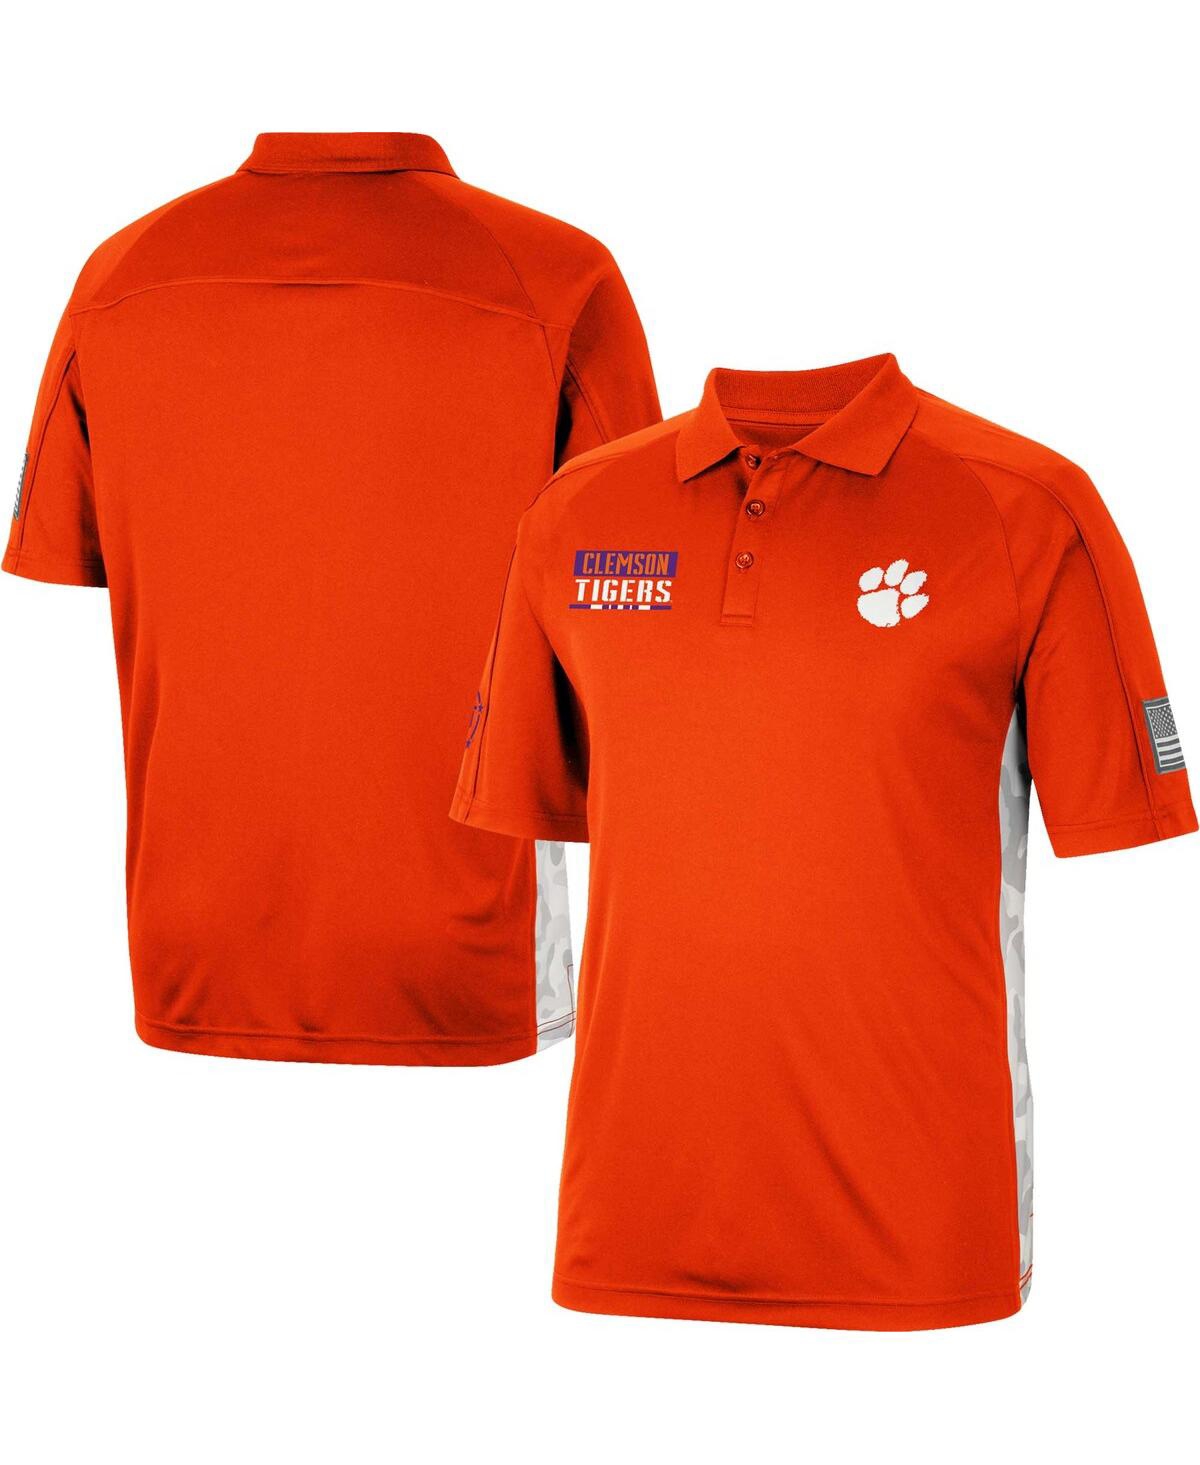 Shop Colosseum Men's  Orange Clemson Tigers Oht Military-inspired Appreciation Snow Camo Polo Shirt